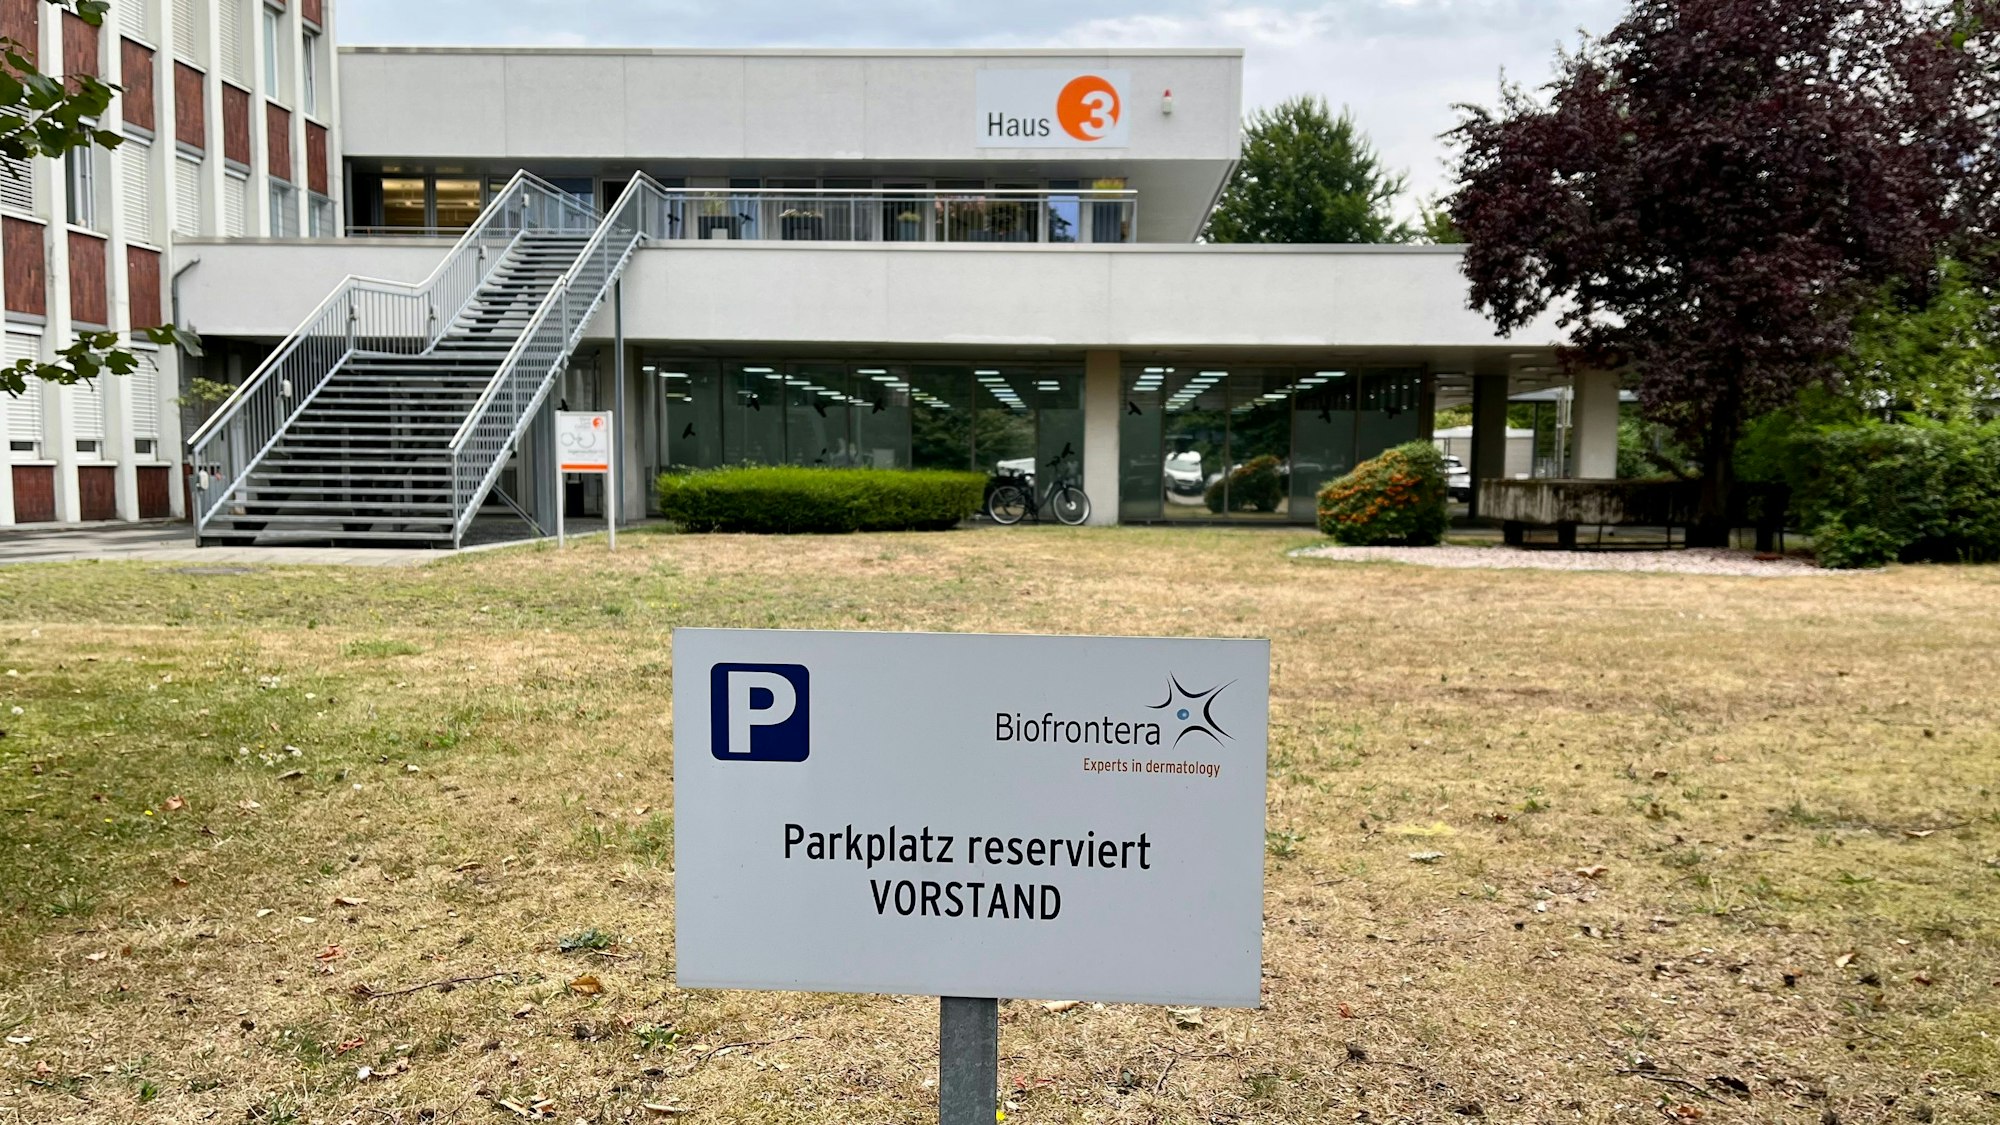 Der Vorstandsparkplatz von Biofrontera in Leverkusen-Manfort